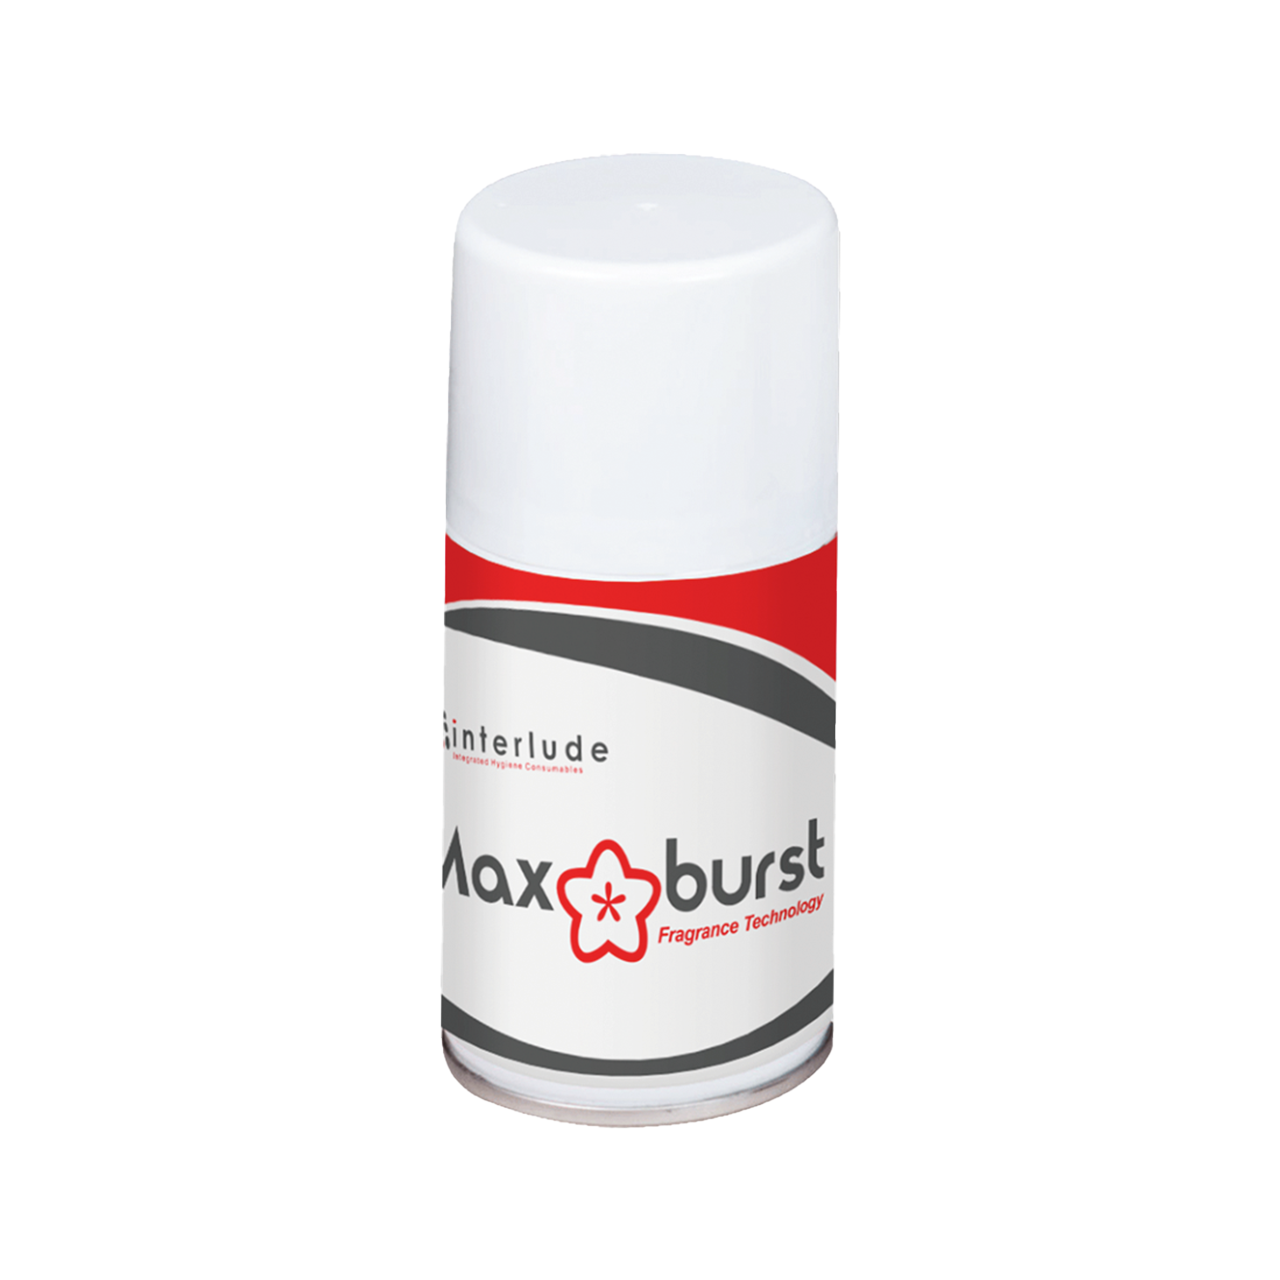 Maxburst Fragrance 260ml